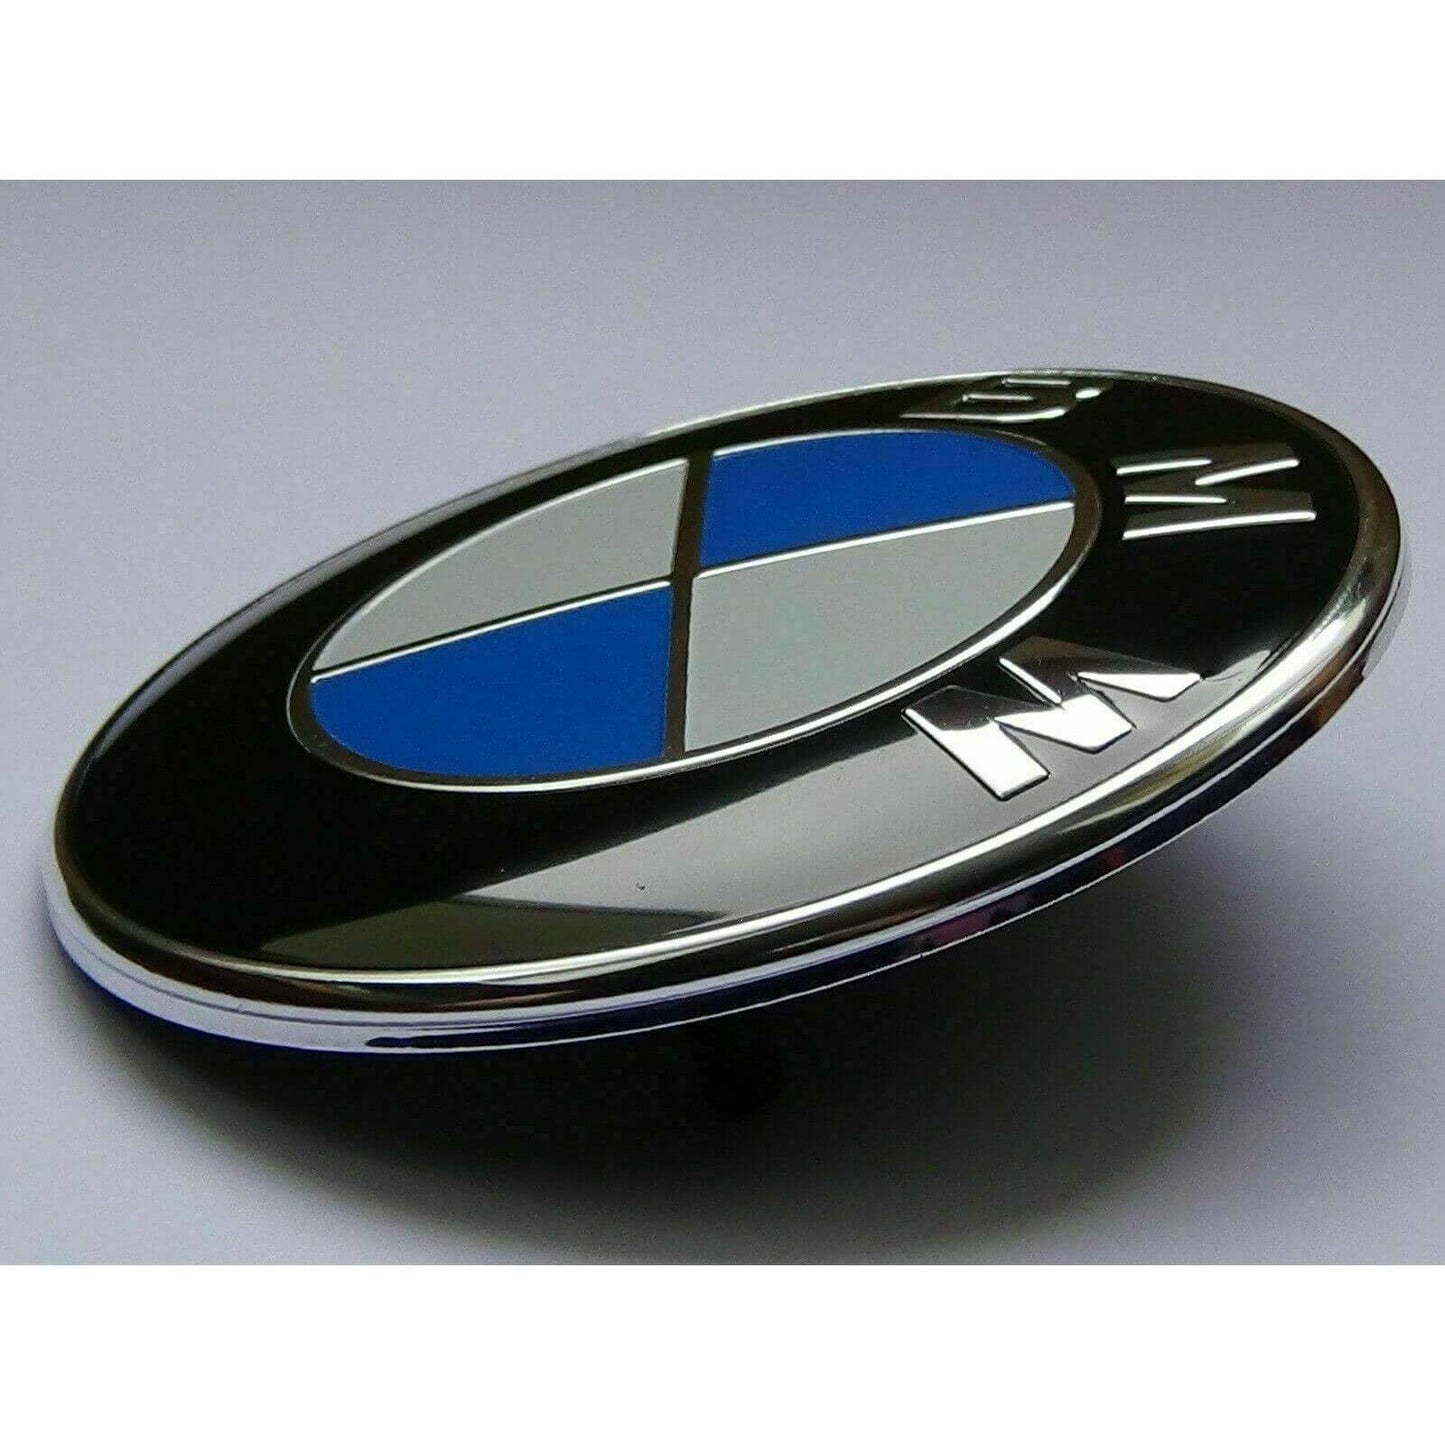 Logo BMW 82mm Capot Emblème E46 E90 E92 E60 E34 E36 E39 X3 X5 X6.